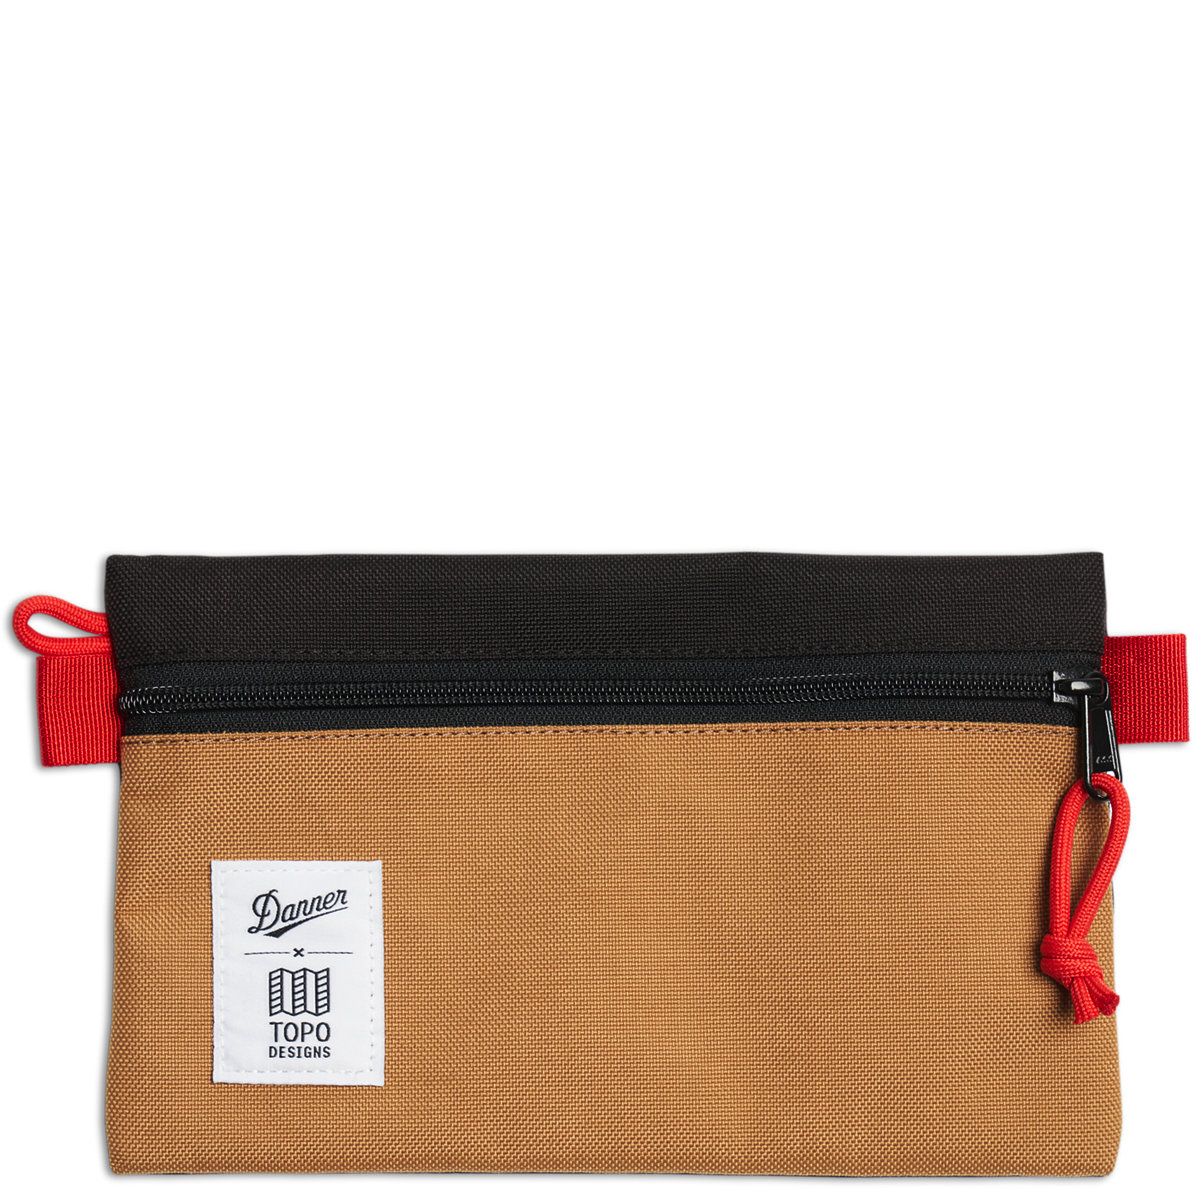 Topo Designs x Danner Accessory Bag Small - Black/Khaki